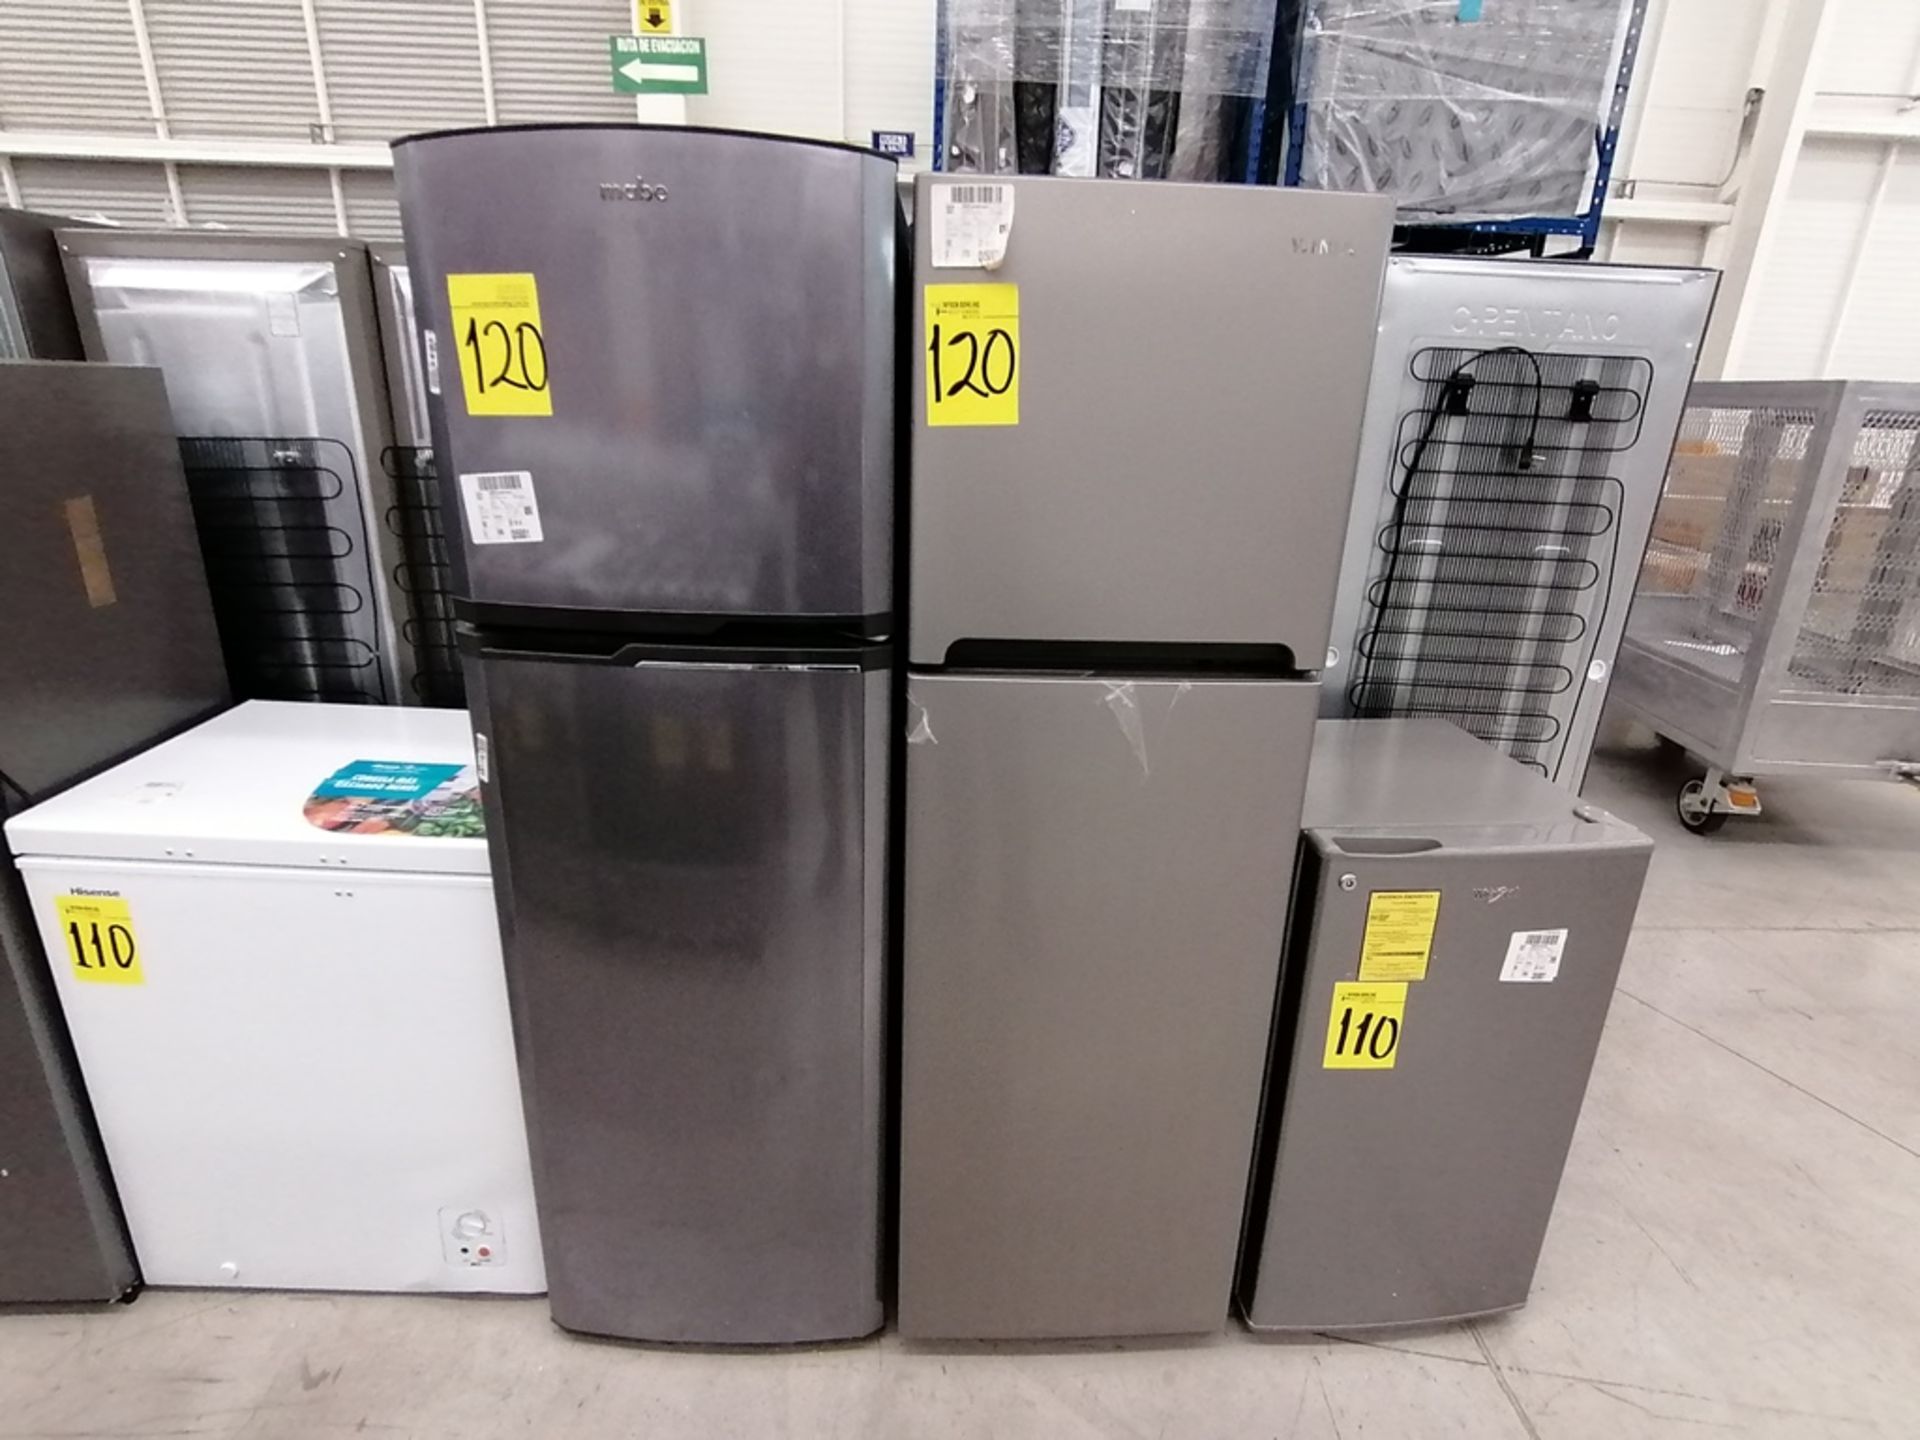 Lote de 2 refrigeradores incluye: 1 Refrigerador, Marca Mabe, Modelo RMA1025VNX, Serie 2110B623189, - Image 3 of 17